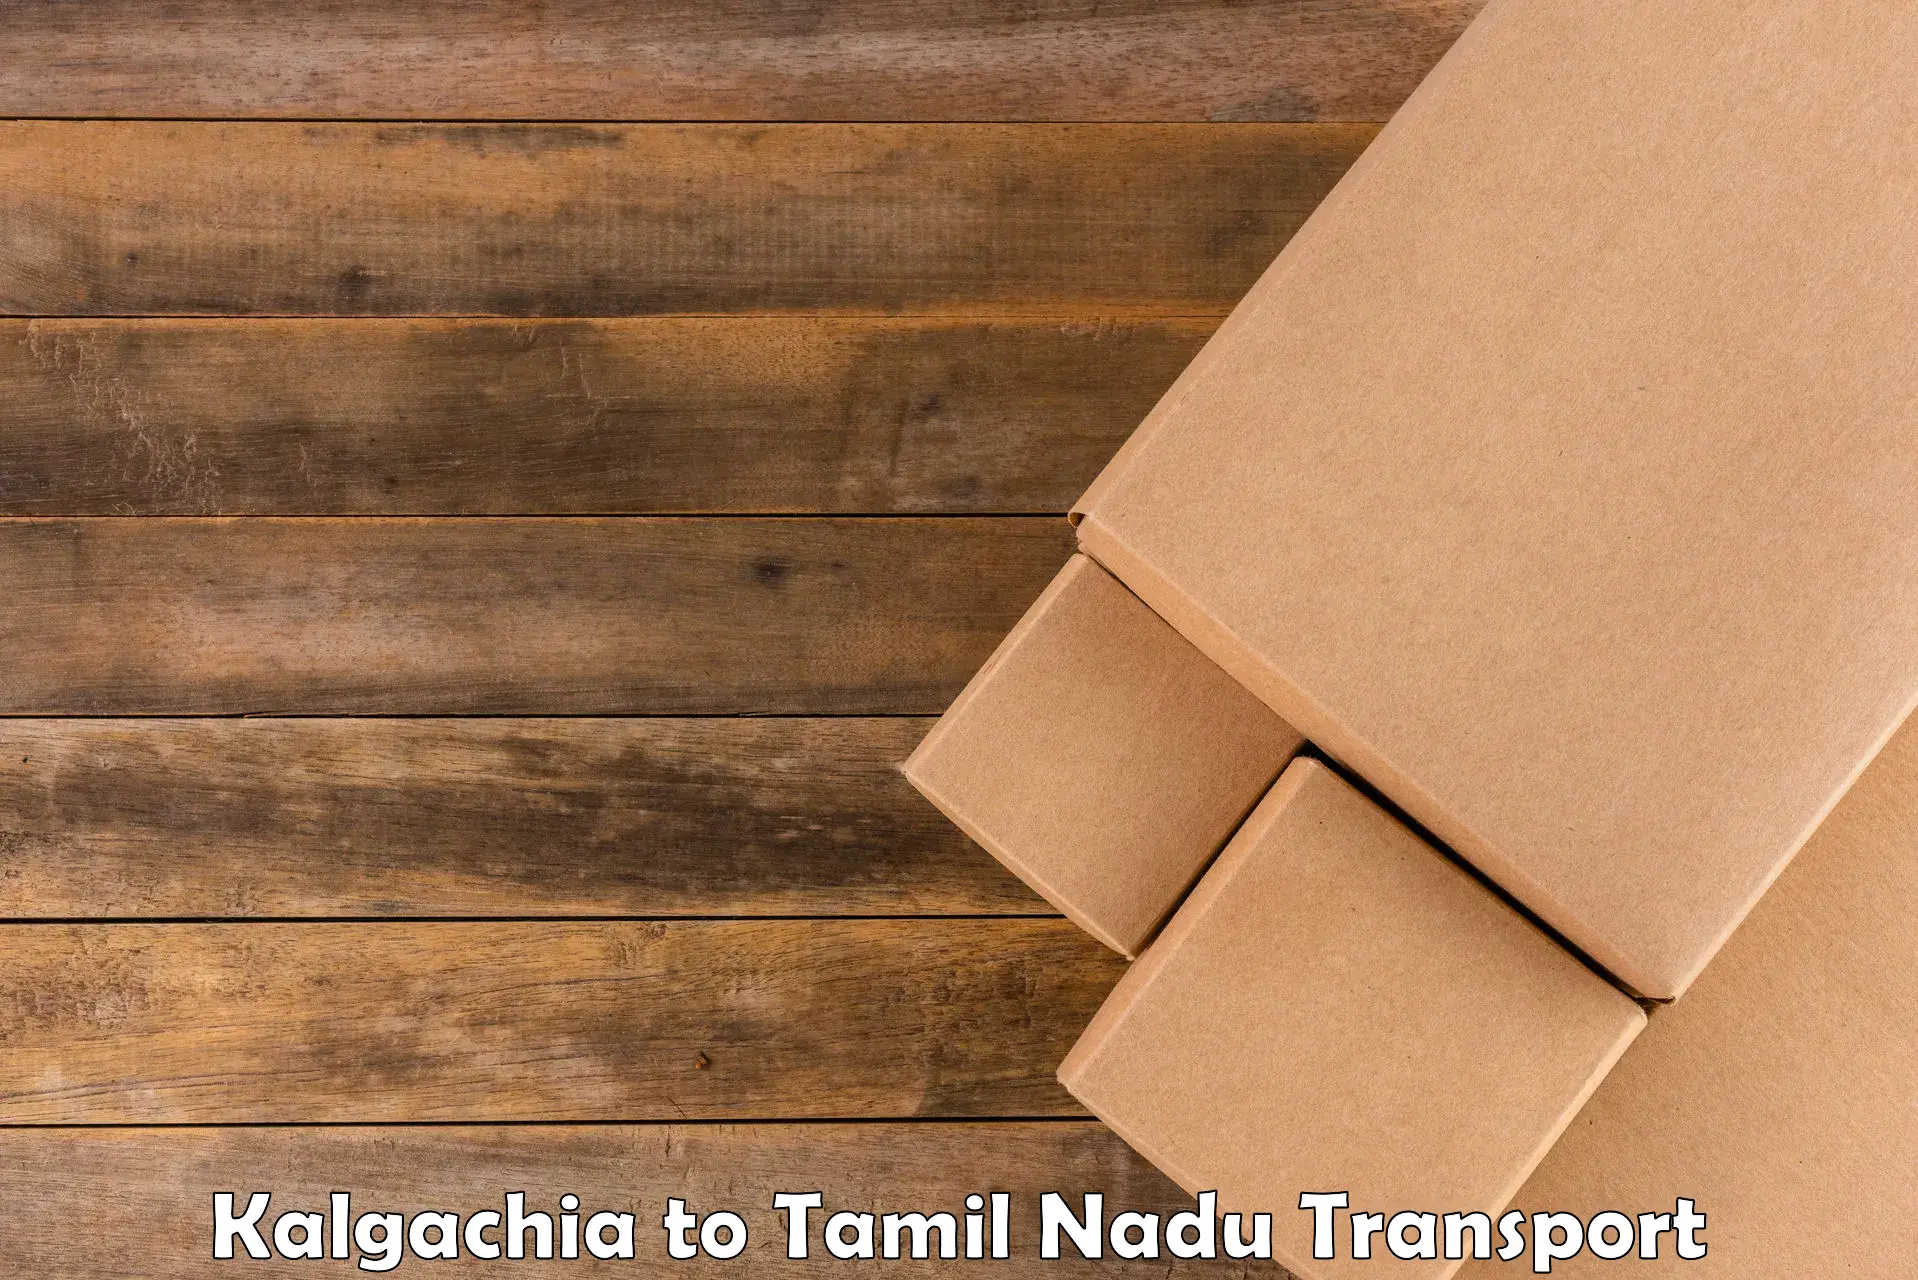 Domestic transport services Kalgachia to Thiruvadanai